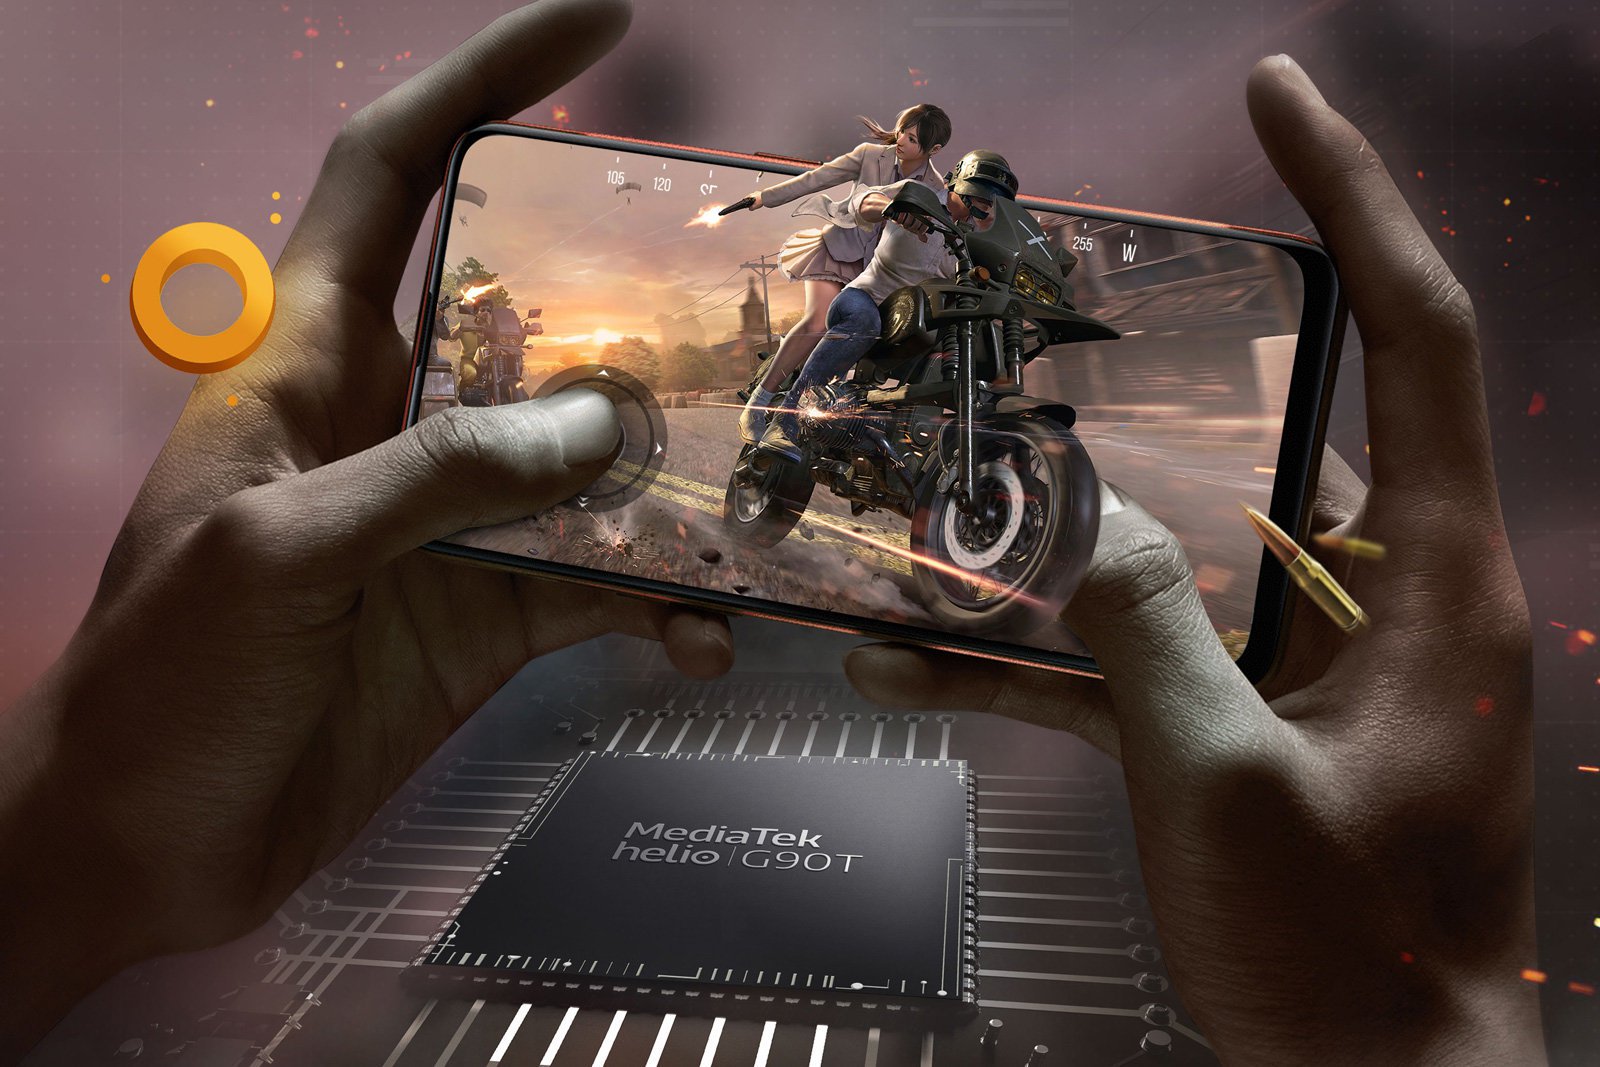 Redmi chuẩn bị ra mắt smartphone chuyên game giá rẻ, dùng chip Helio G90T - Ảnh 3.